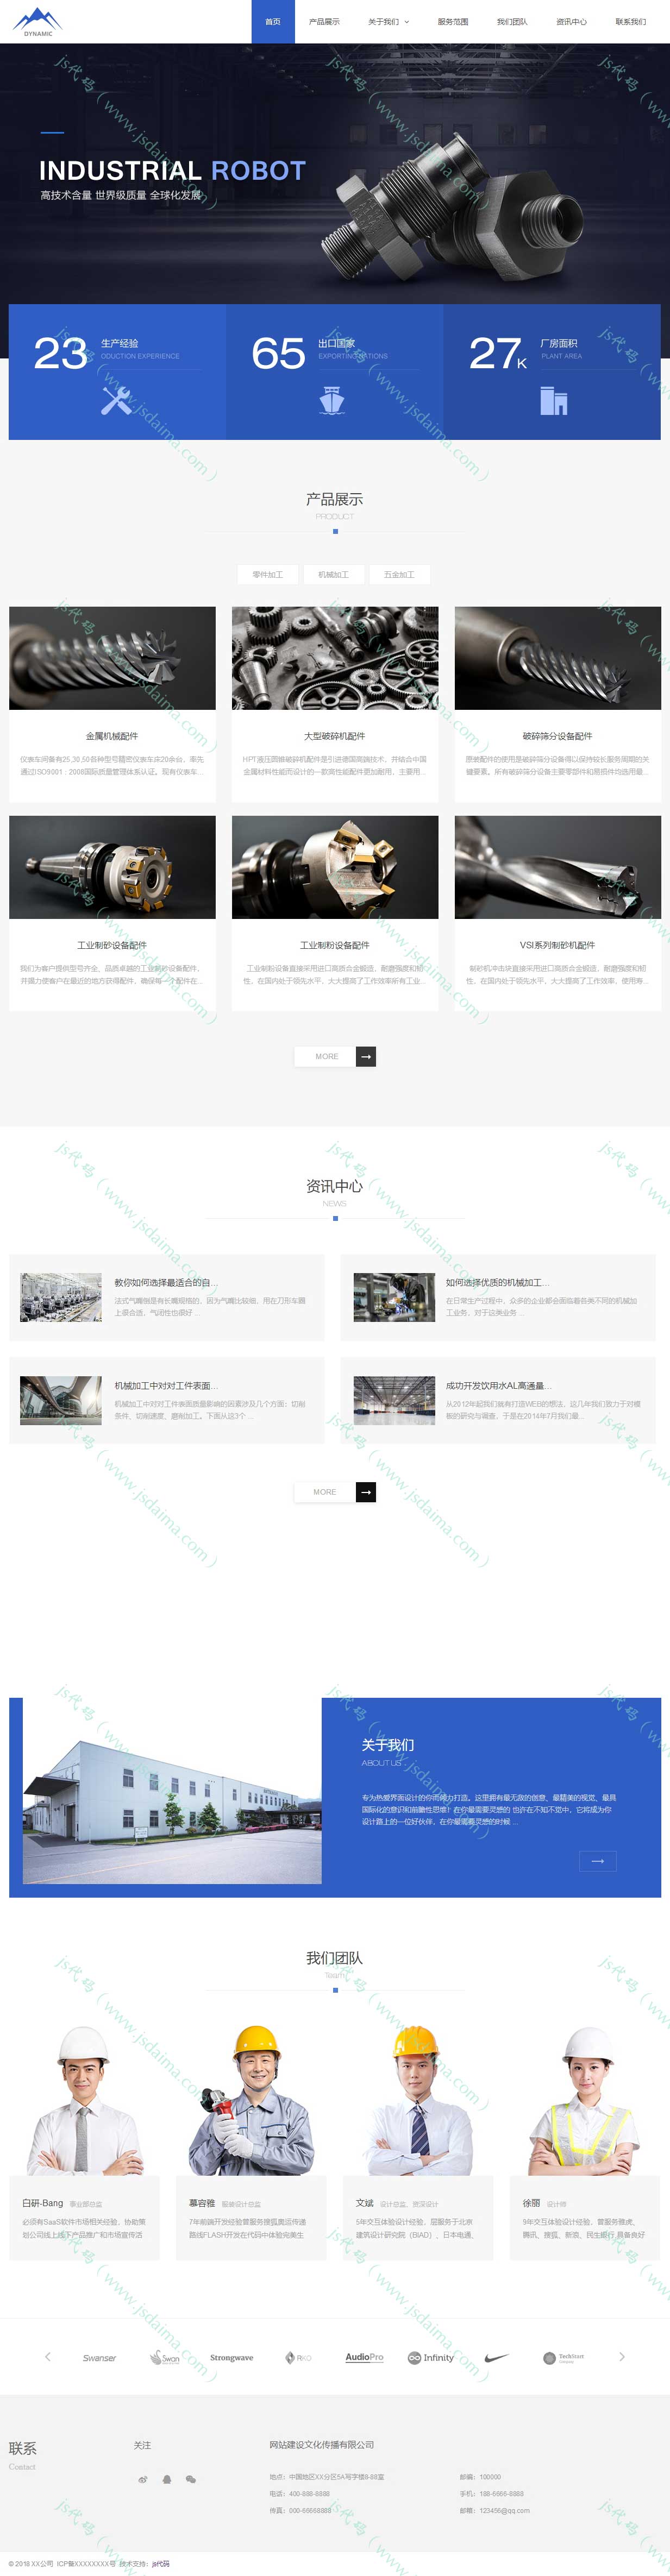 蓝色宽屏工程机械设备零部件配件制造业公司企业网站模板